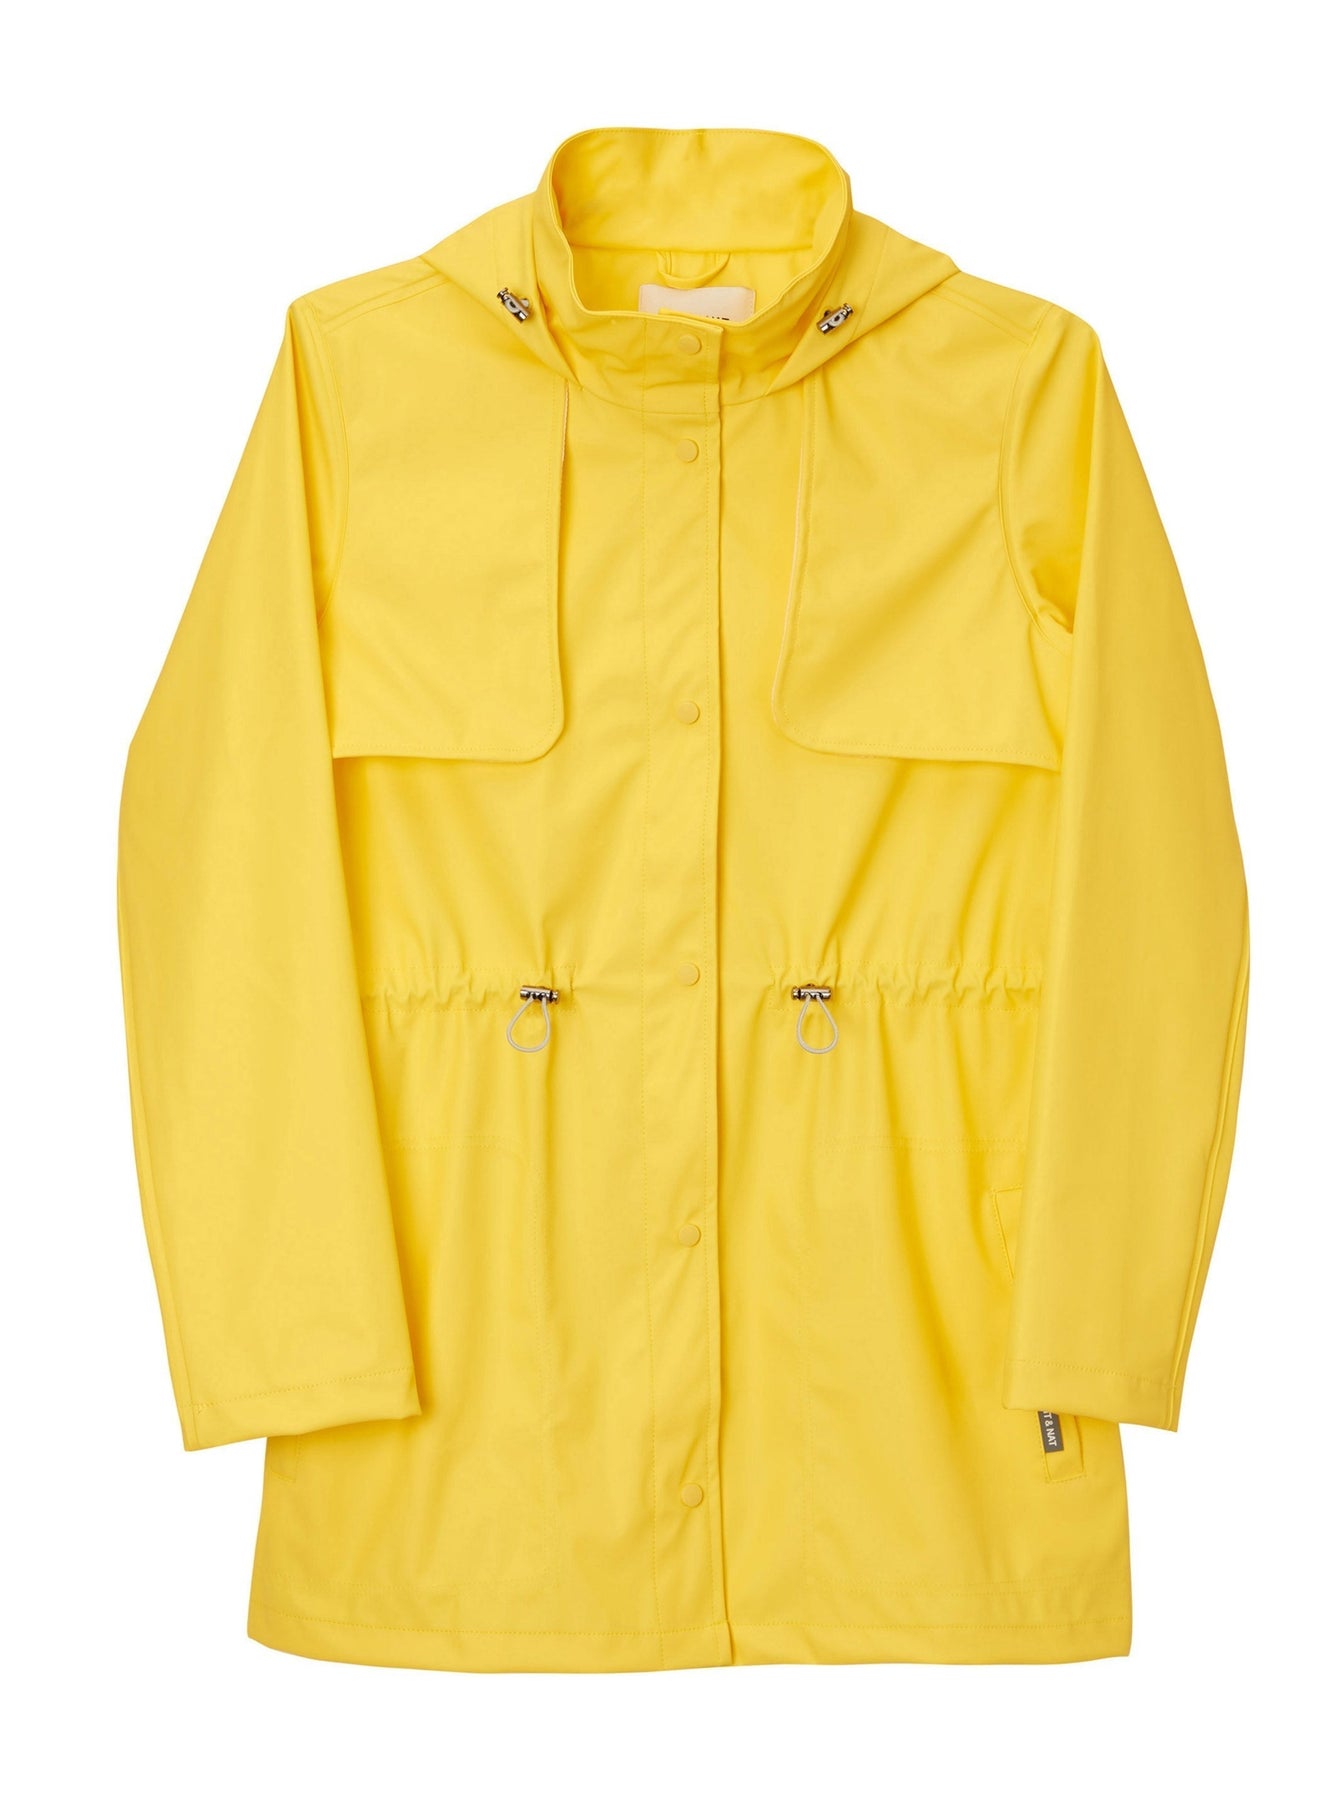 ALEXIS Women’s Rain Jacket - Yellow – For Days